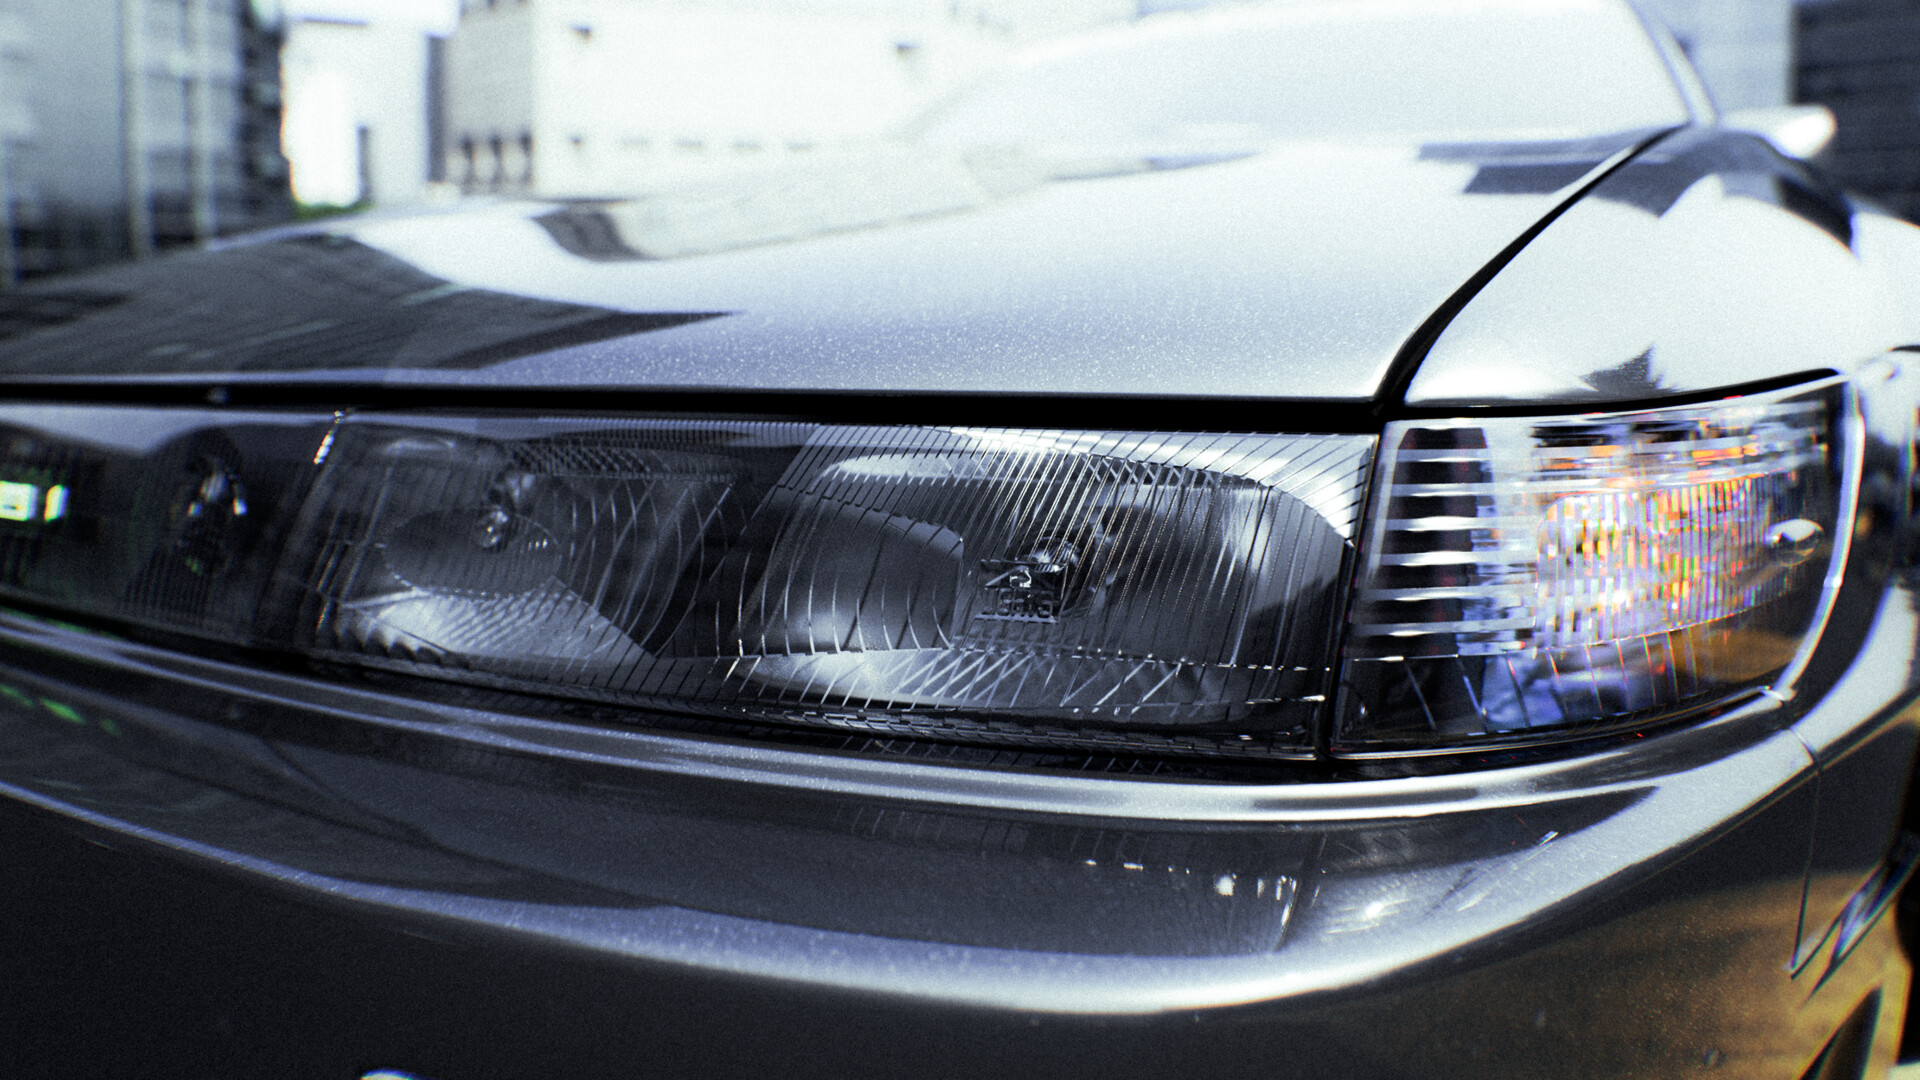 COMP Mirror Black Manual adjust L&R HD For Nissan Silvia S13 